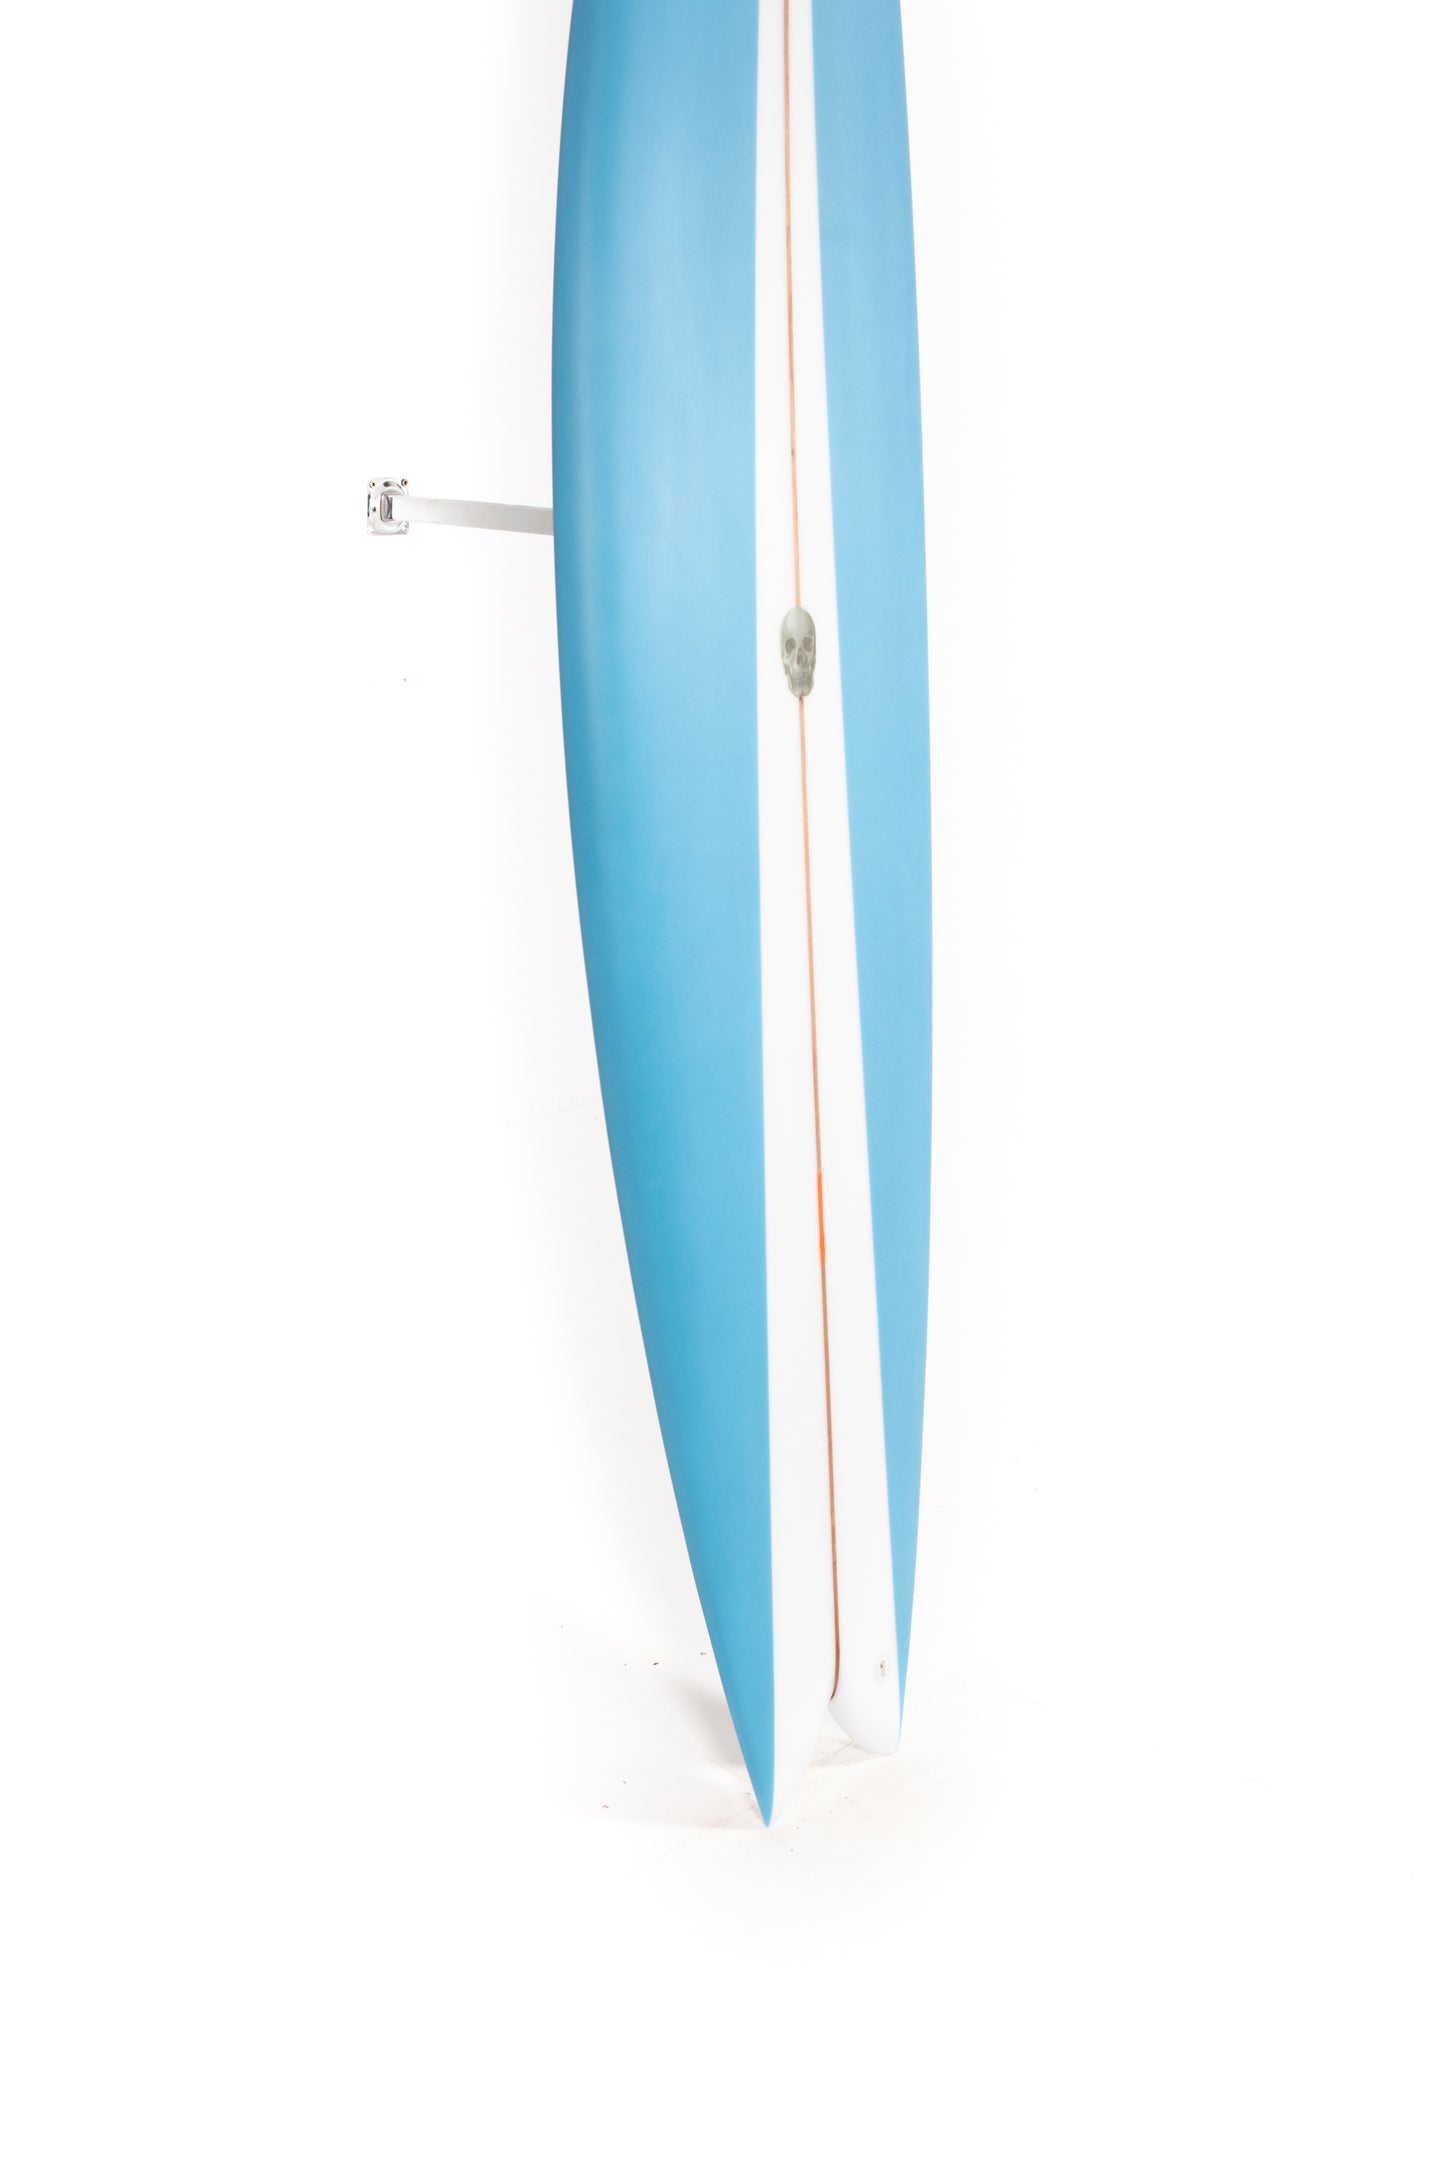 
                  
                    Pukas Surf Shop - Christenson Surfboards - NAUTILUS - 7'6" x 21 5/8 x 2 3/4 - CX05016
                  
                